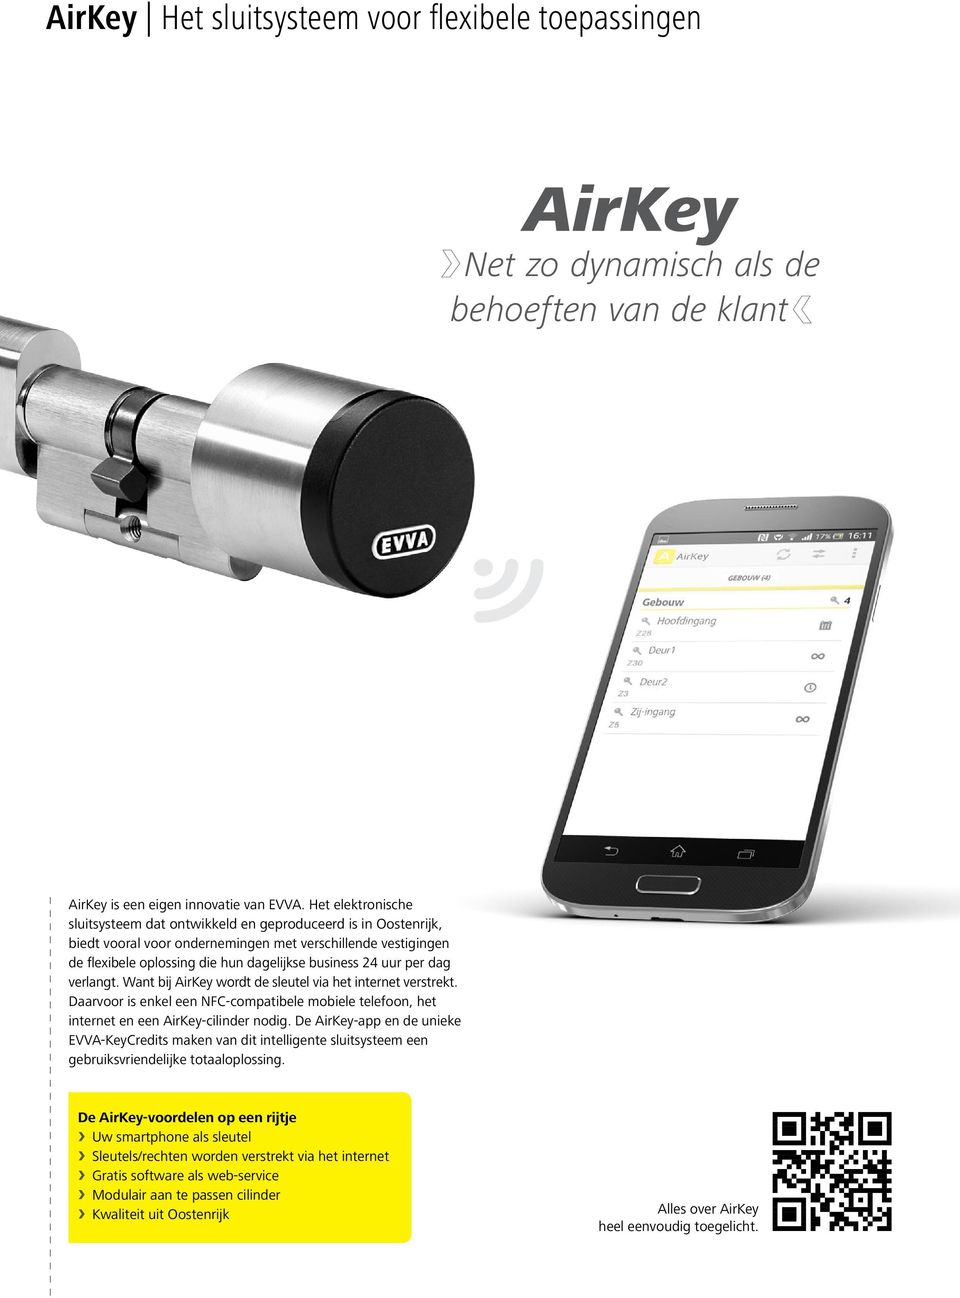 per dag verlangt. Want bij AirKey wordt de sleutel via het internet verstrekt. Daarvoor is enkel een NFC-compatibele mobiele telefoon, het internet en een AirKey-cilinder nodig.